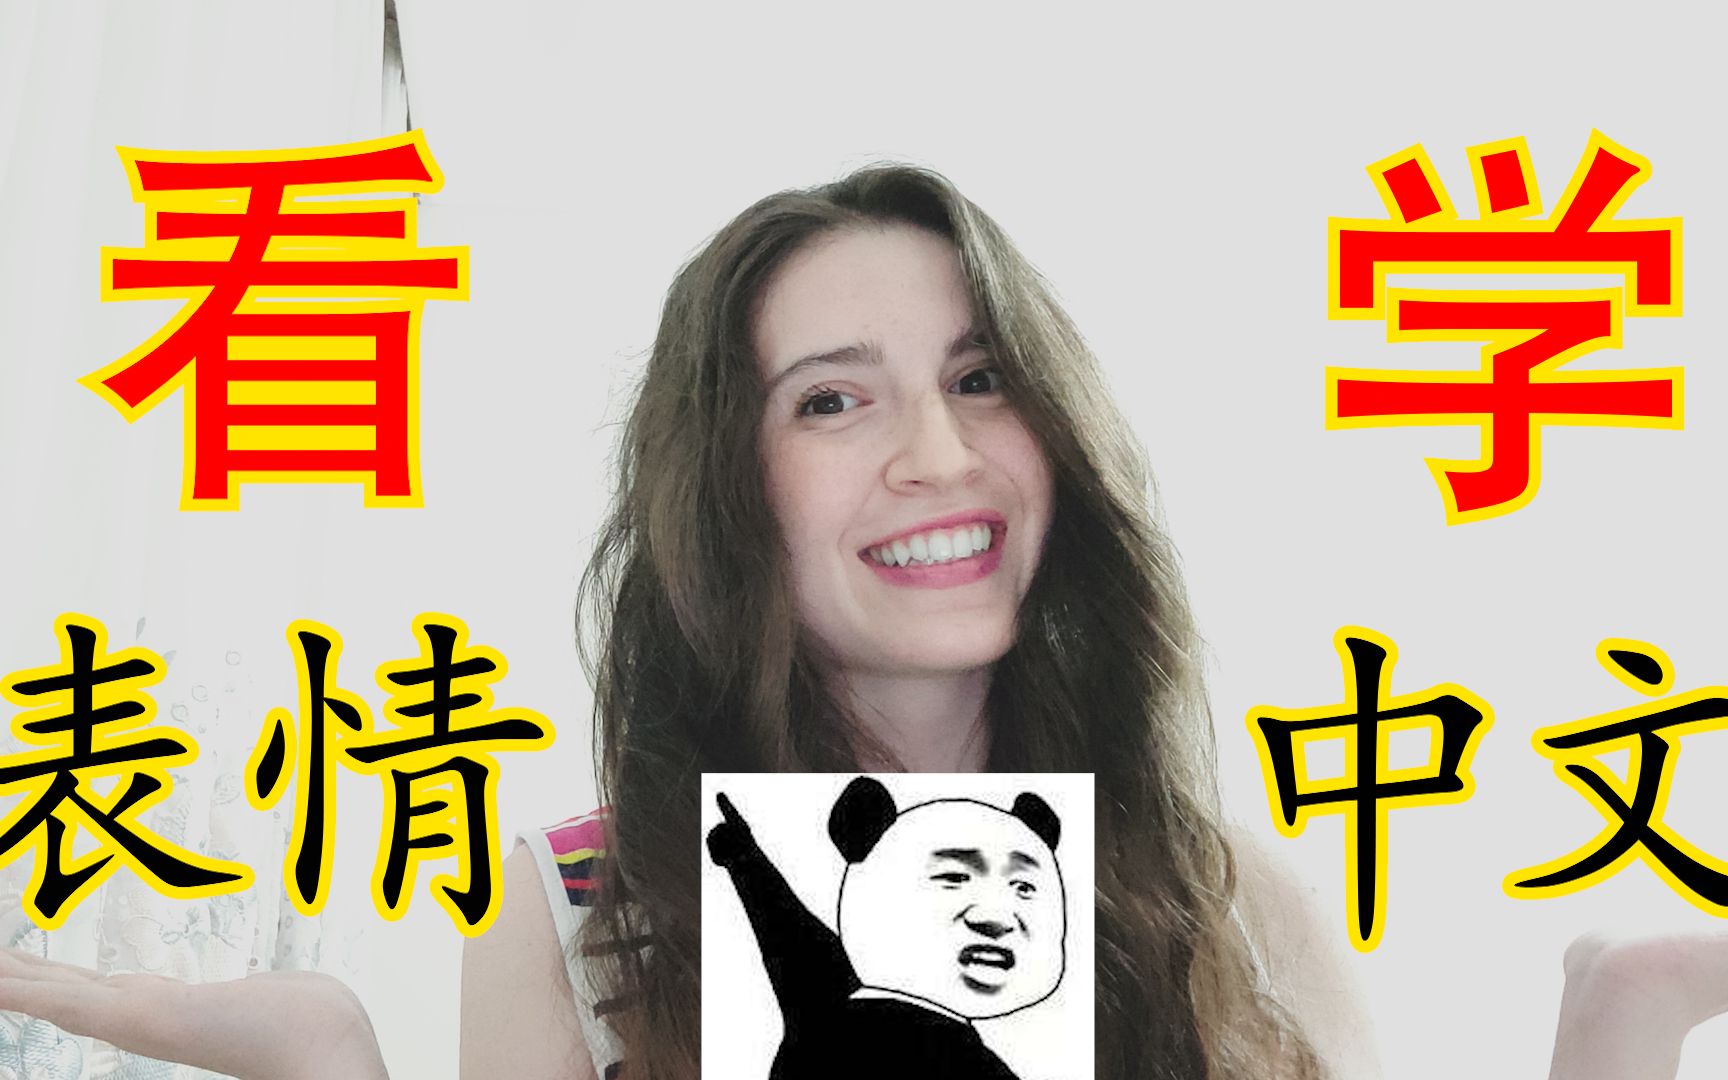 老外学中文表情包图片